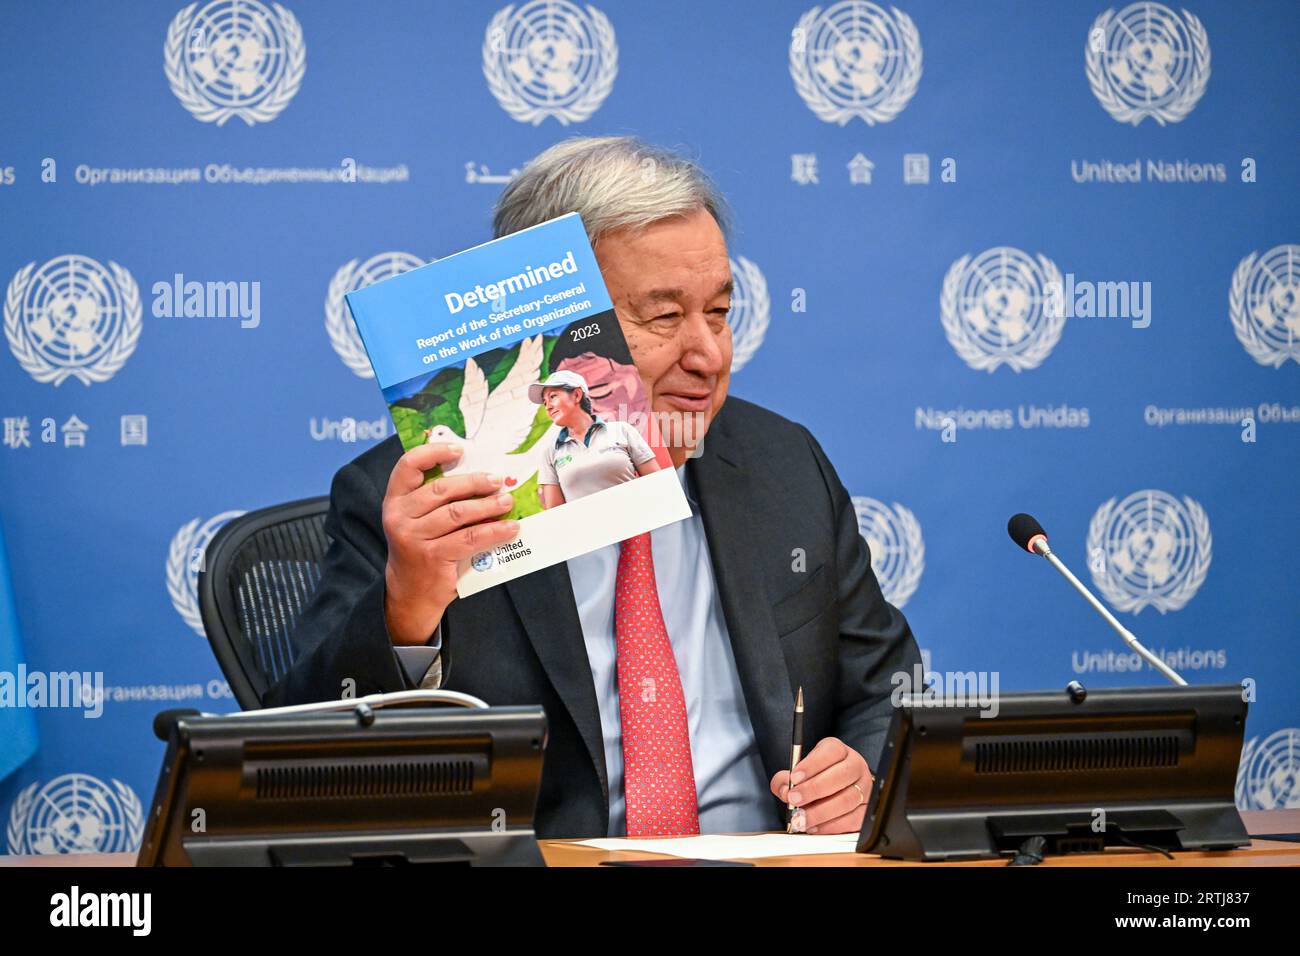 New York, USA. 13 settembre 2023. Il Segretario generale delle Nazioni Unite Antonio Guterres si rivolge a una conferenza stampa in vista dell'Assemblea generale delle Nazioni Unite della prossima settimana. "L'azione è ciò di cui il mondo ha bisogno”, ha affermato definendo la riunione di 193 Stati membri per la settimana ad alto livello dell'Assemblea generale delle Nazioni Unite come un "momento unico” per valutare lo stato degli affari mondiali, ma anche "agire per il bene comune”. "Non è il momento di indifferenza o indecisione”, António Guterres ha detto ai giornalisti del quartier generale delle Nazioni Unite. "Questo è il momento di trovare soluzioni reali e pratiche." Crediti: Enrique Shore/Alamy Live News Foto Stock